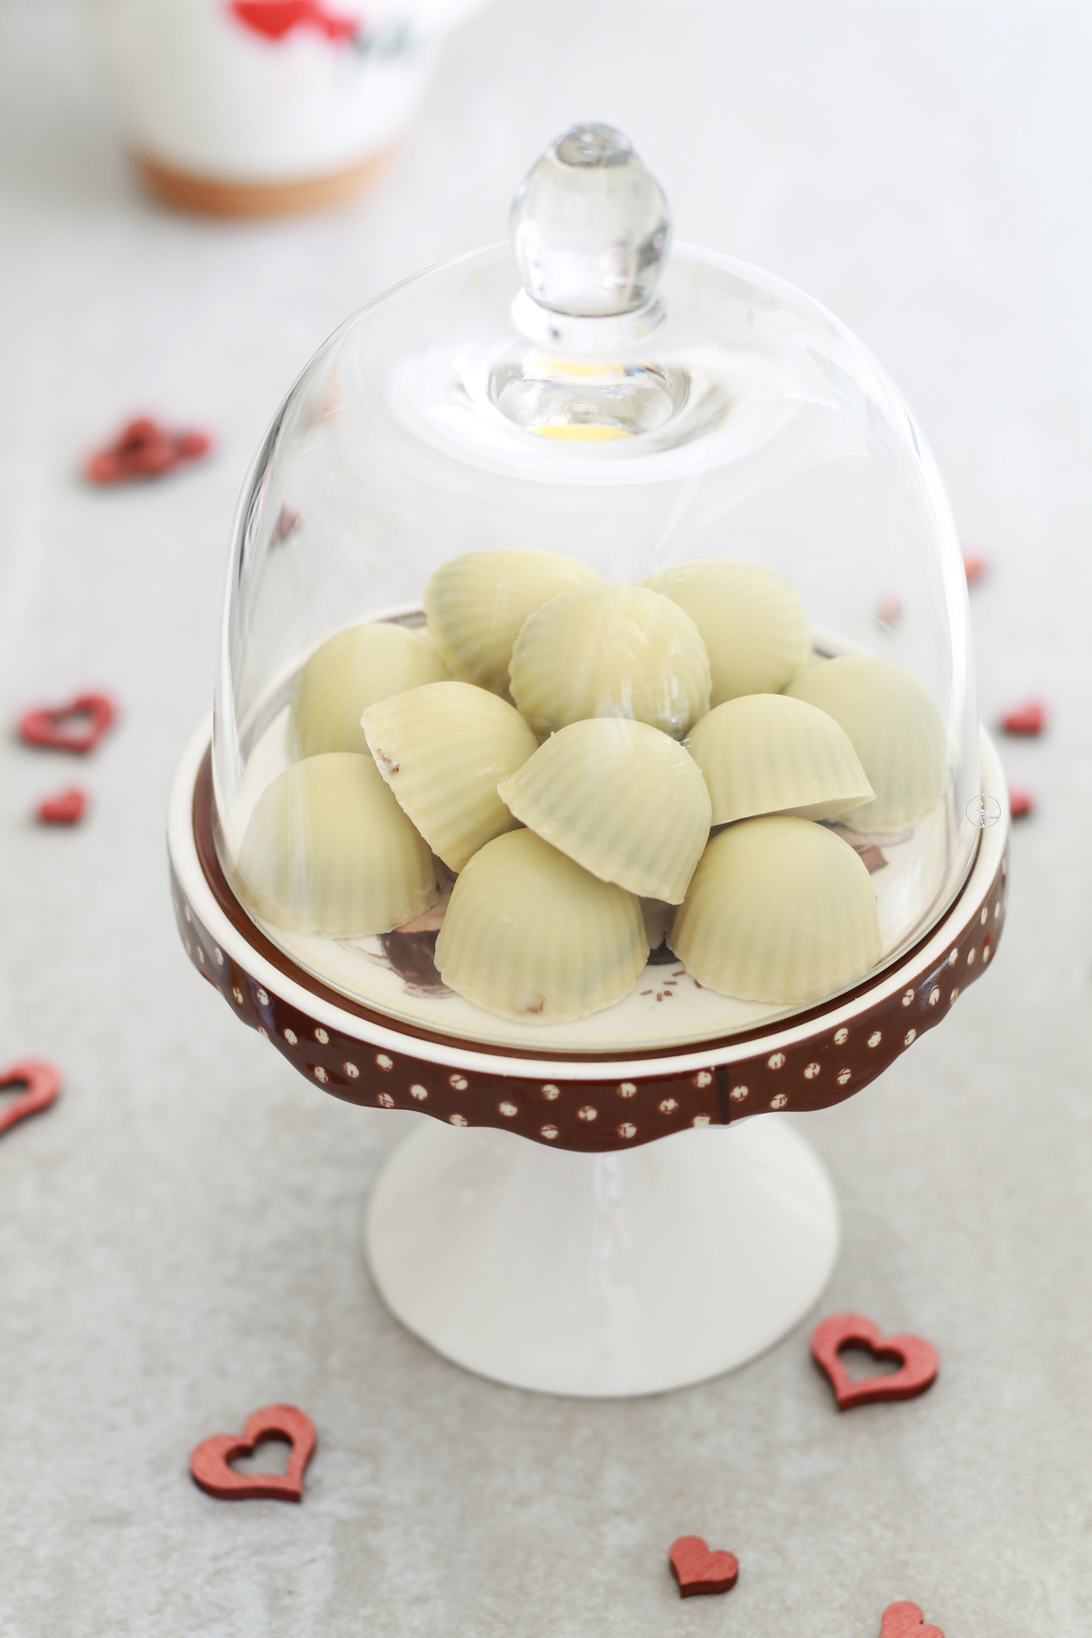 Pralines au chocolat blanc et noir pour la Saint Valentin - La Cassata Celiaca